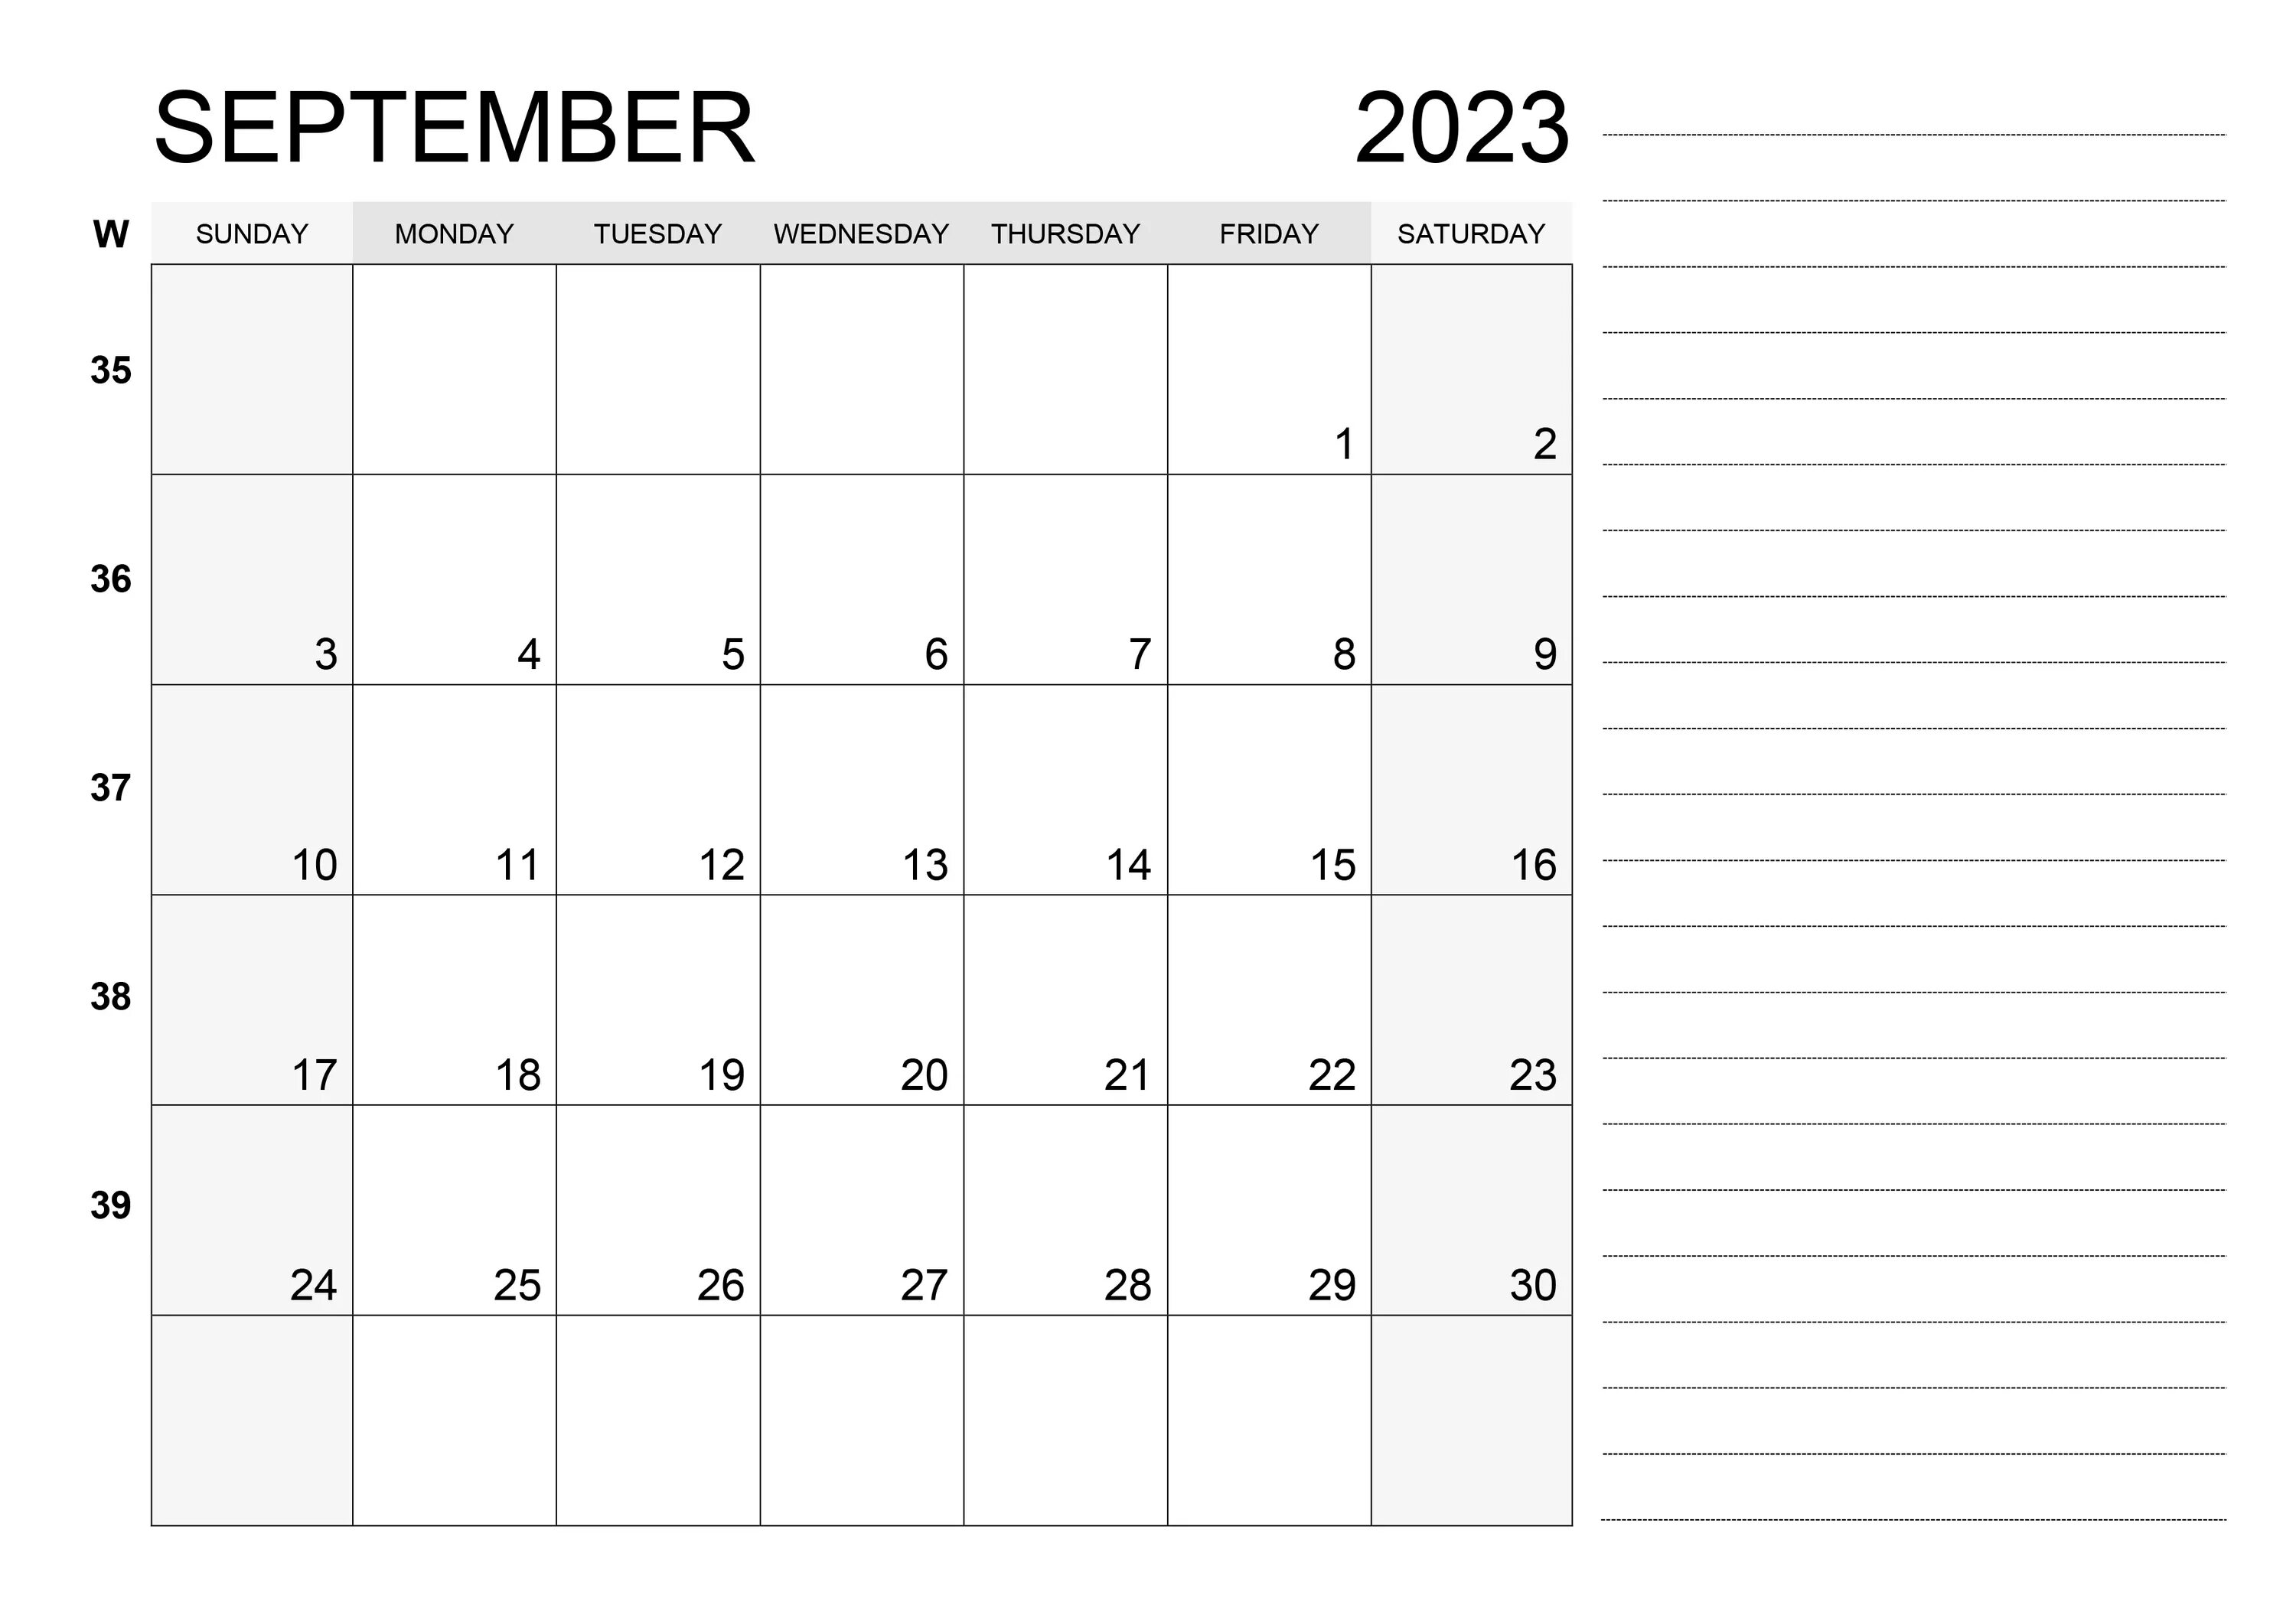 Октябрь 2023 года. Календарь 2023. Ноябрь декабрь 2023. Календарь наоктябпь 2023. Больничный декабрь 2023